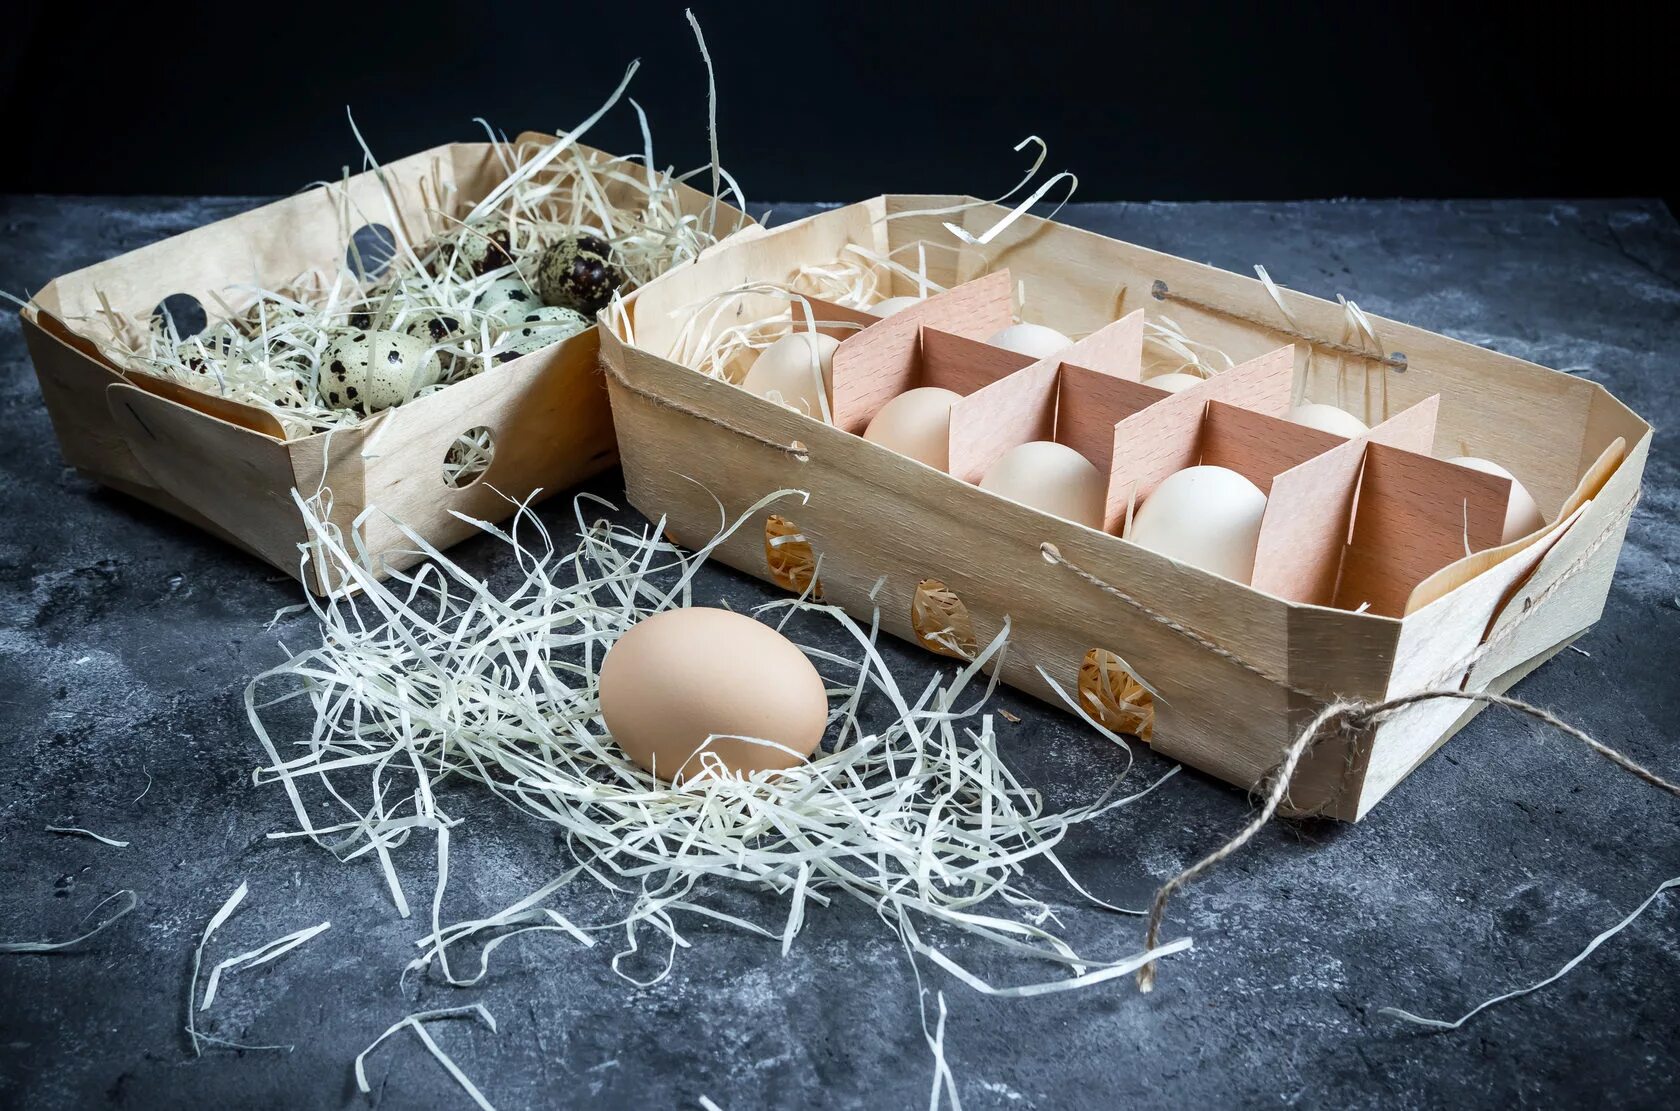 Упаковка для яиц купить. Упаковка для яиц. Яйца куриные в упаковке. Яичная упаковка. Эксклюзивная упаковка для яиц.